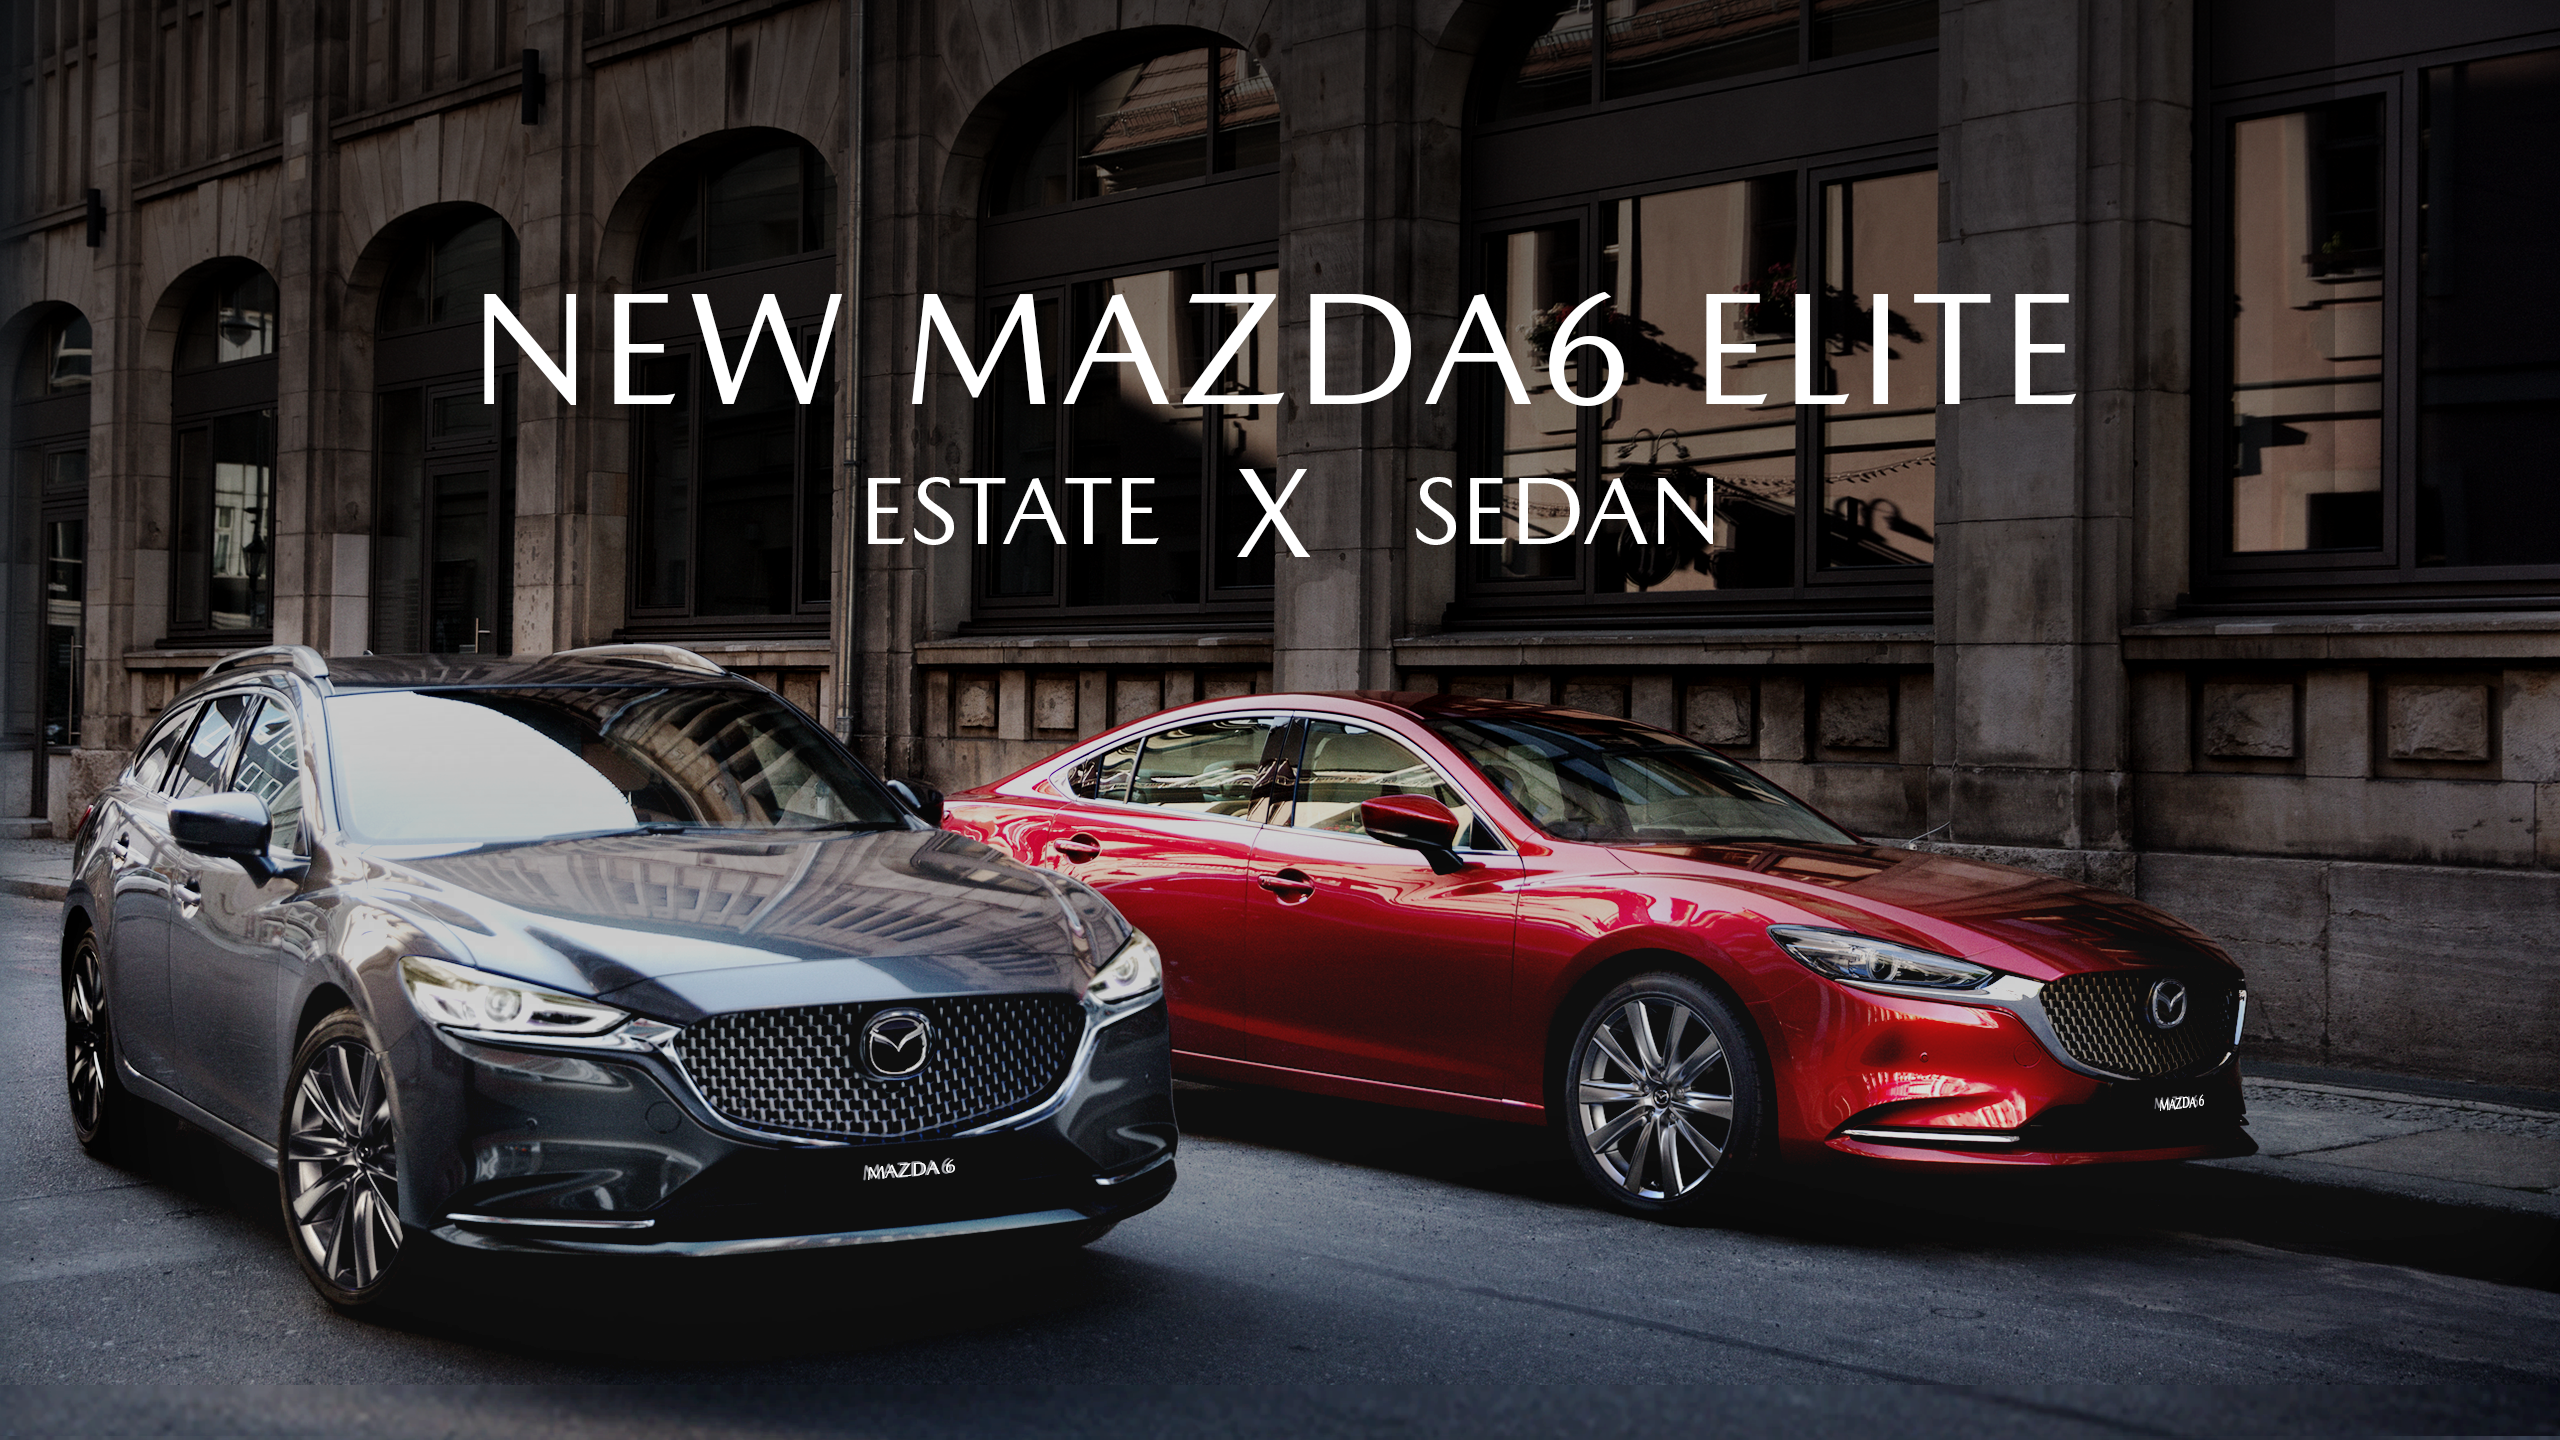 All New Mazda6 Elite